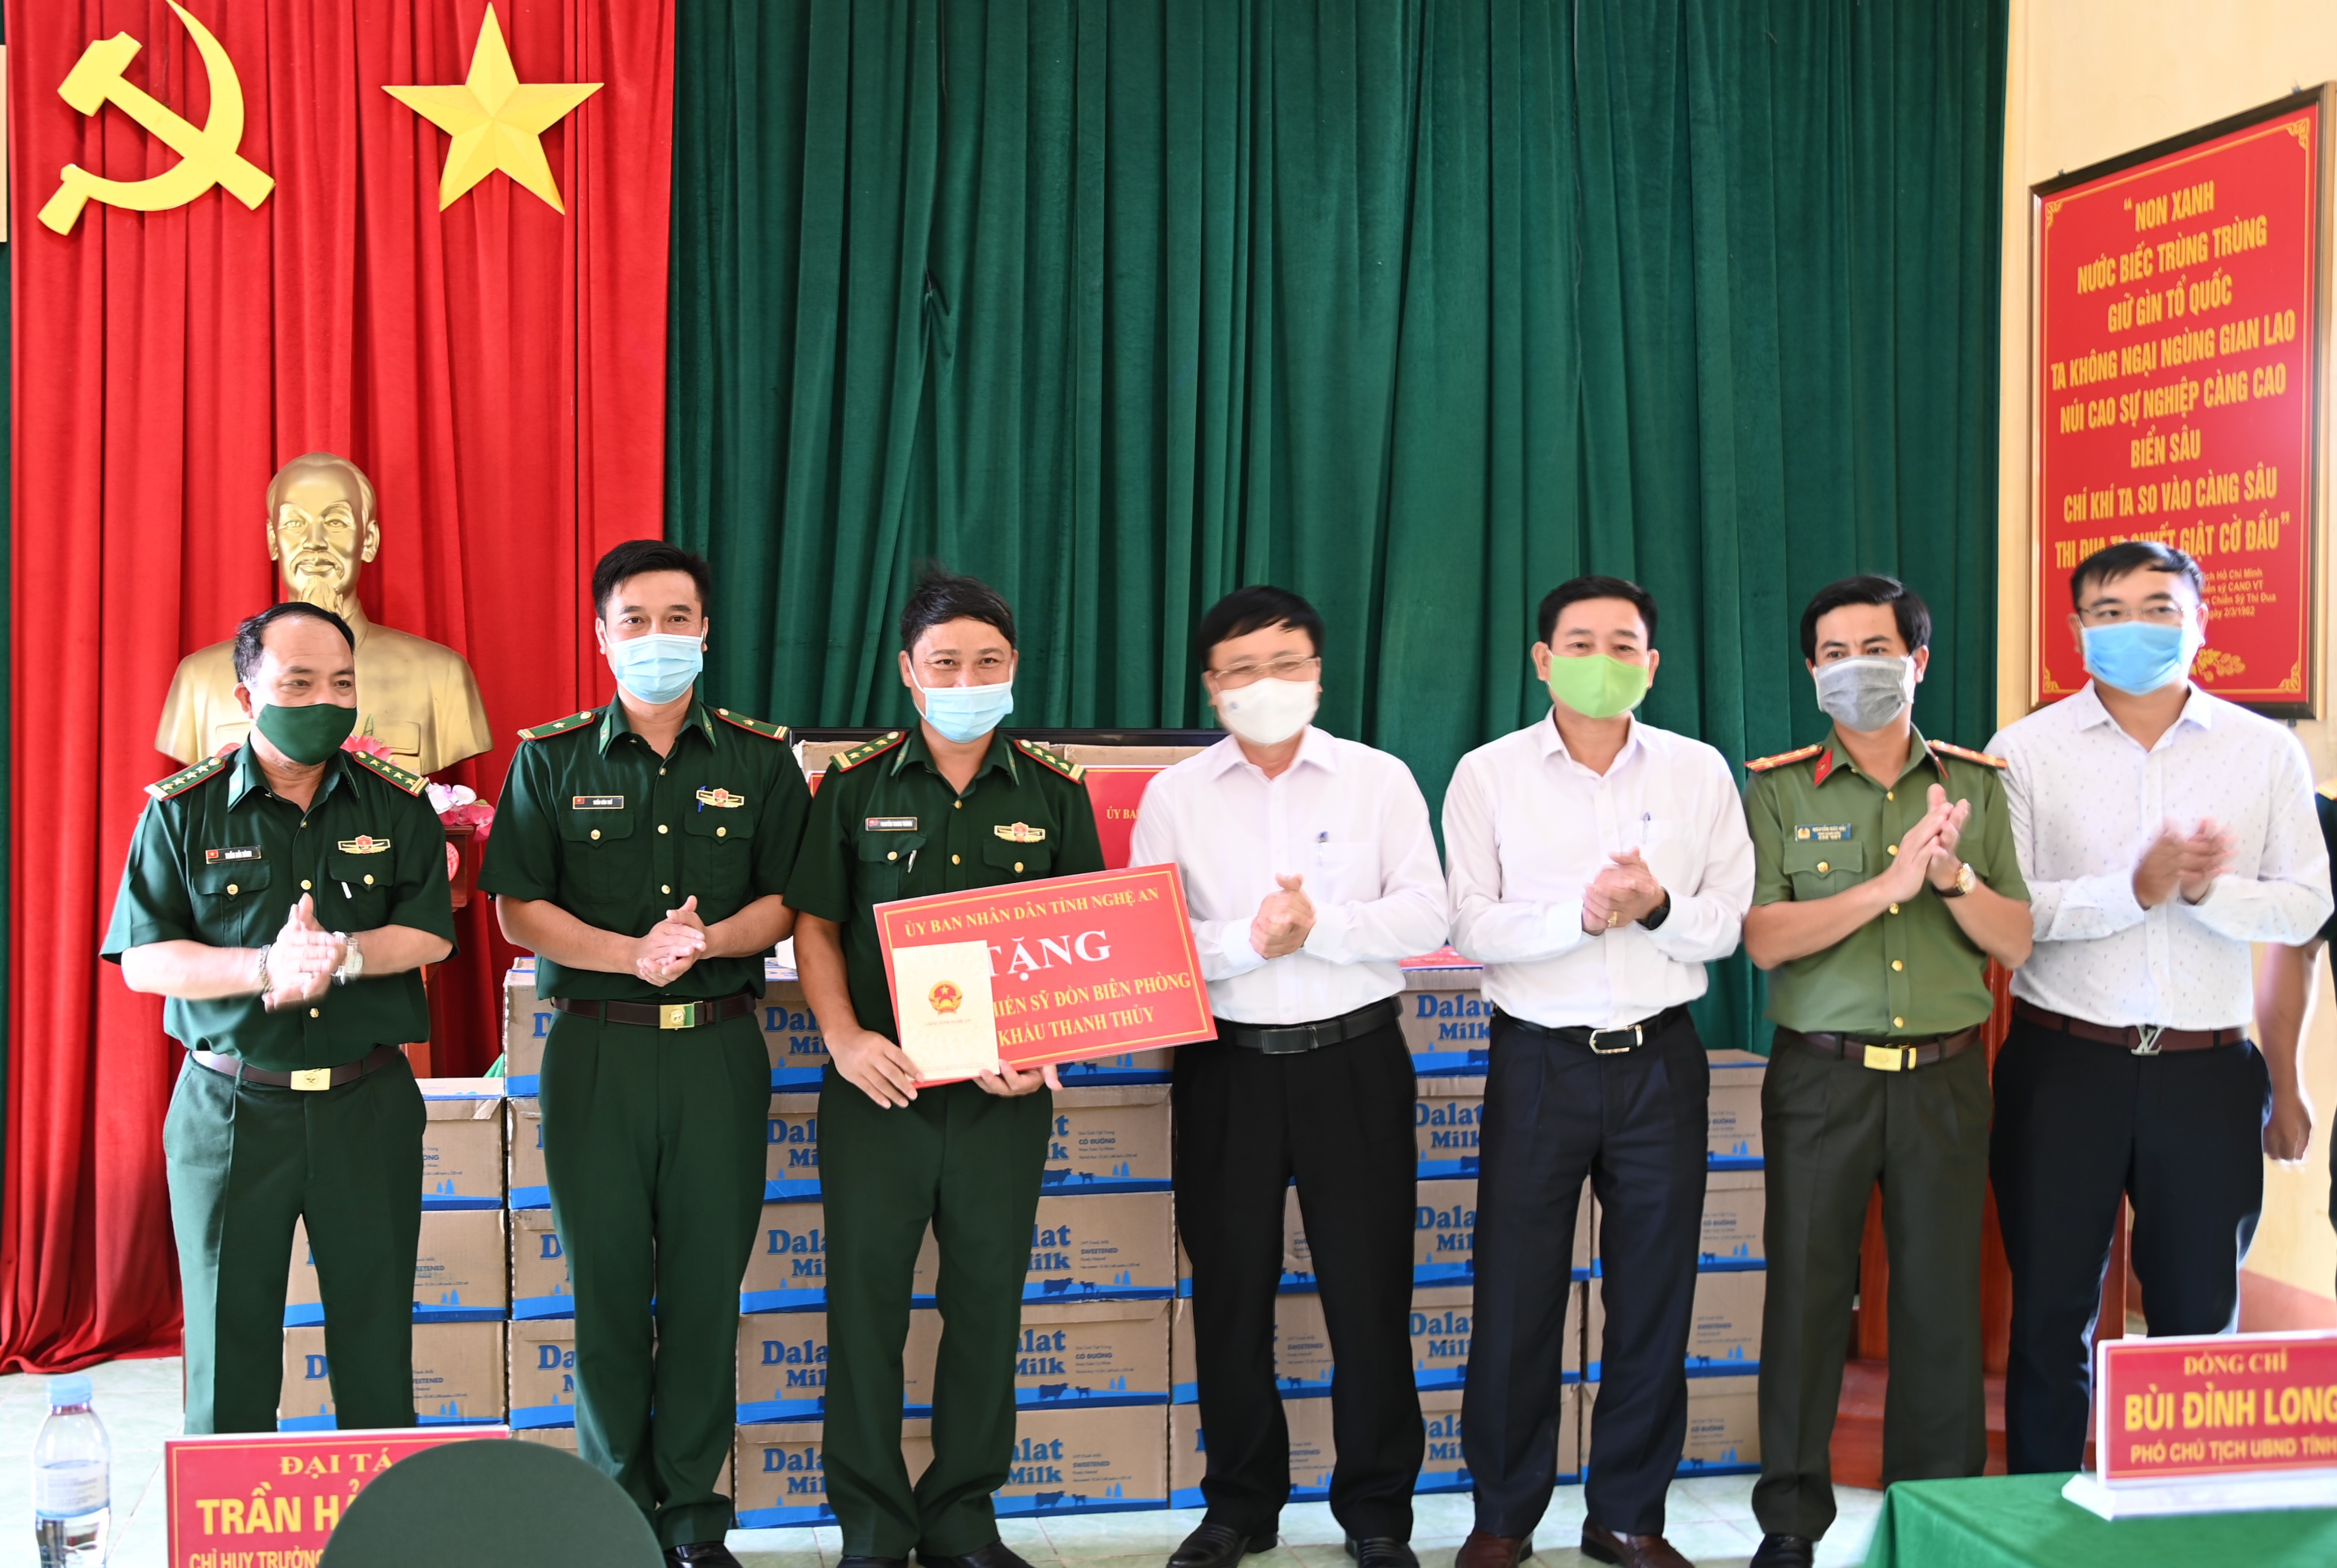 Đoàn công tác của tỉnh Nghệ An thăm hỏi động viên CBCS BP Thanh Thủy và Ngọc Lâm, BĐBP Nghệ An